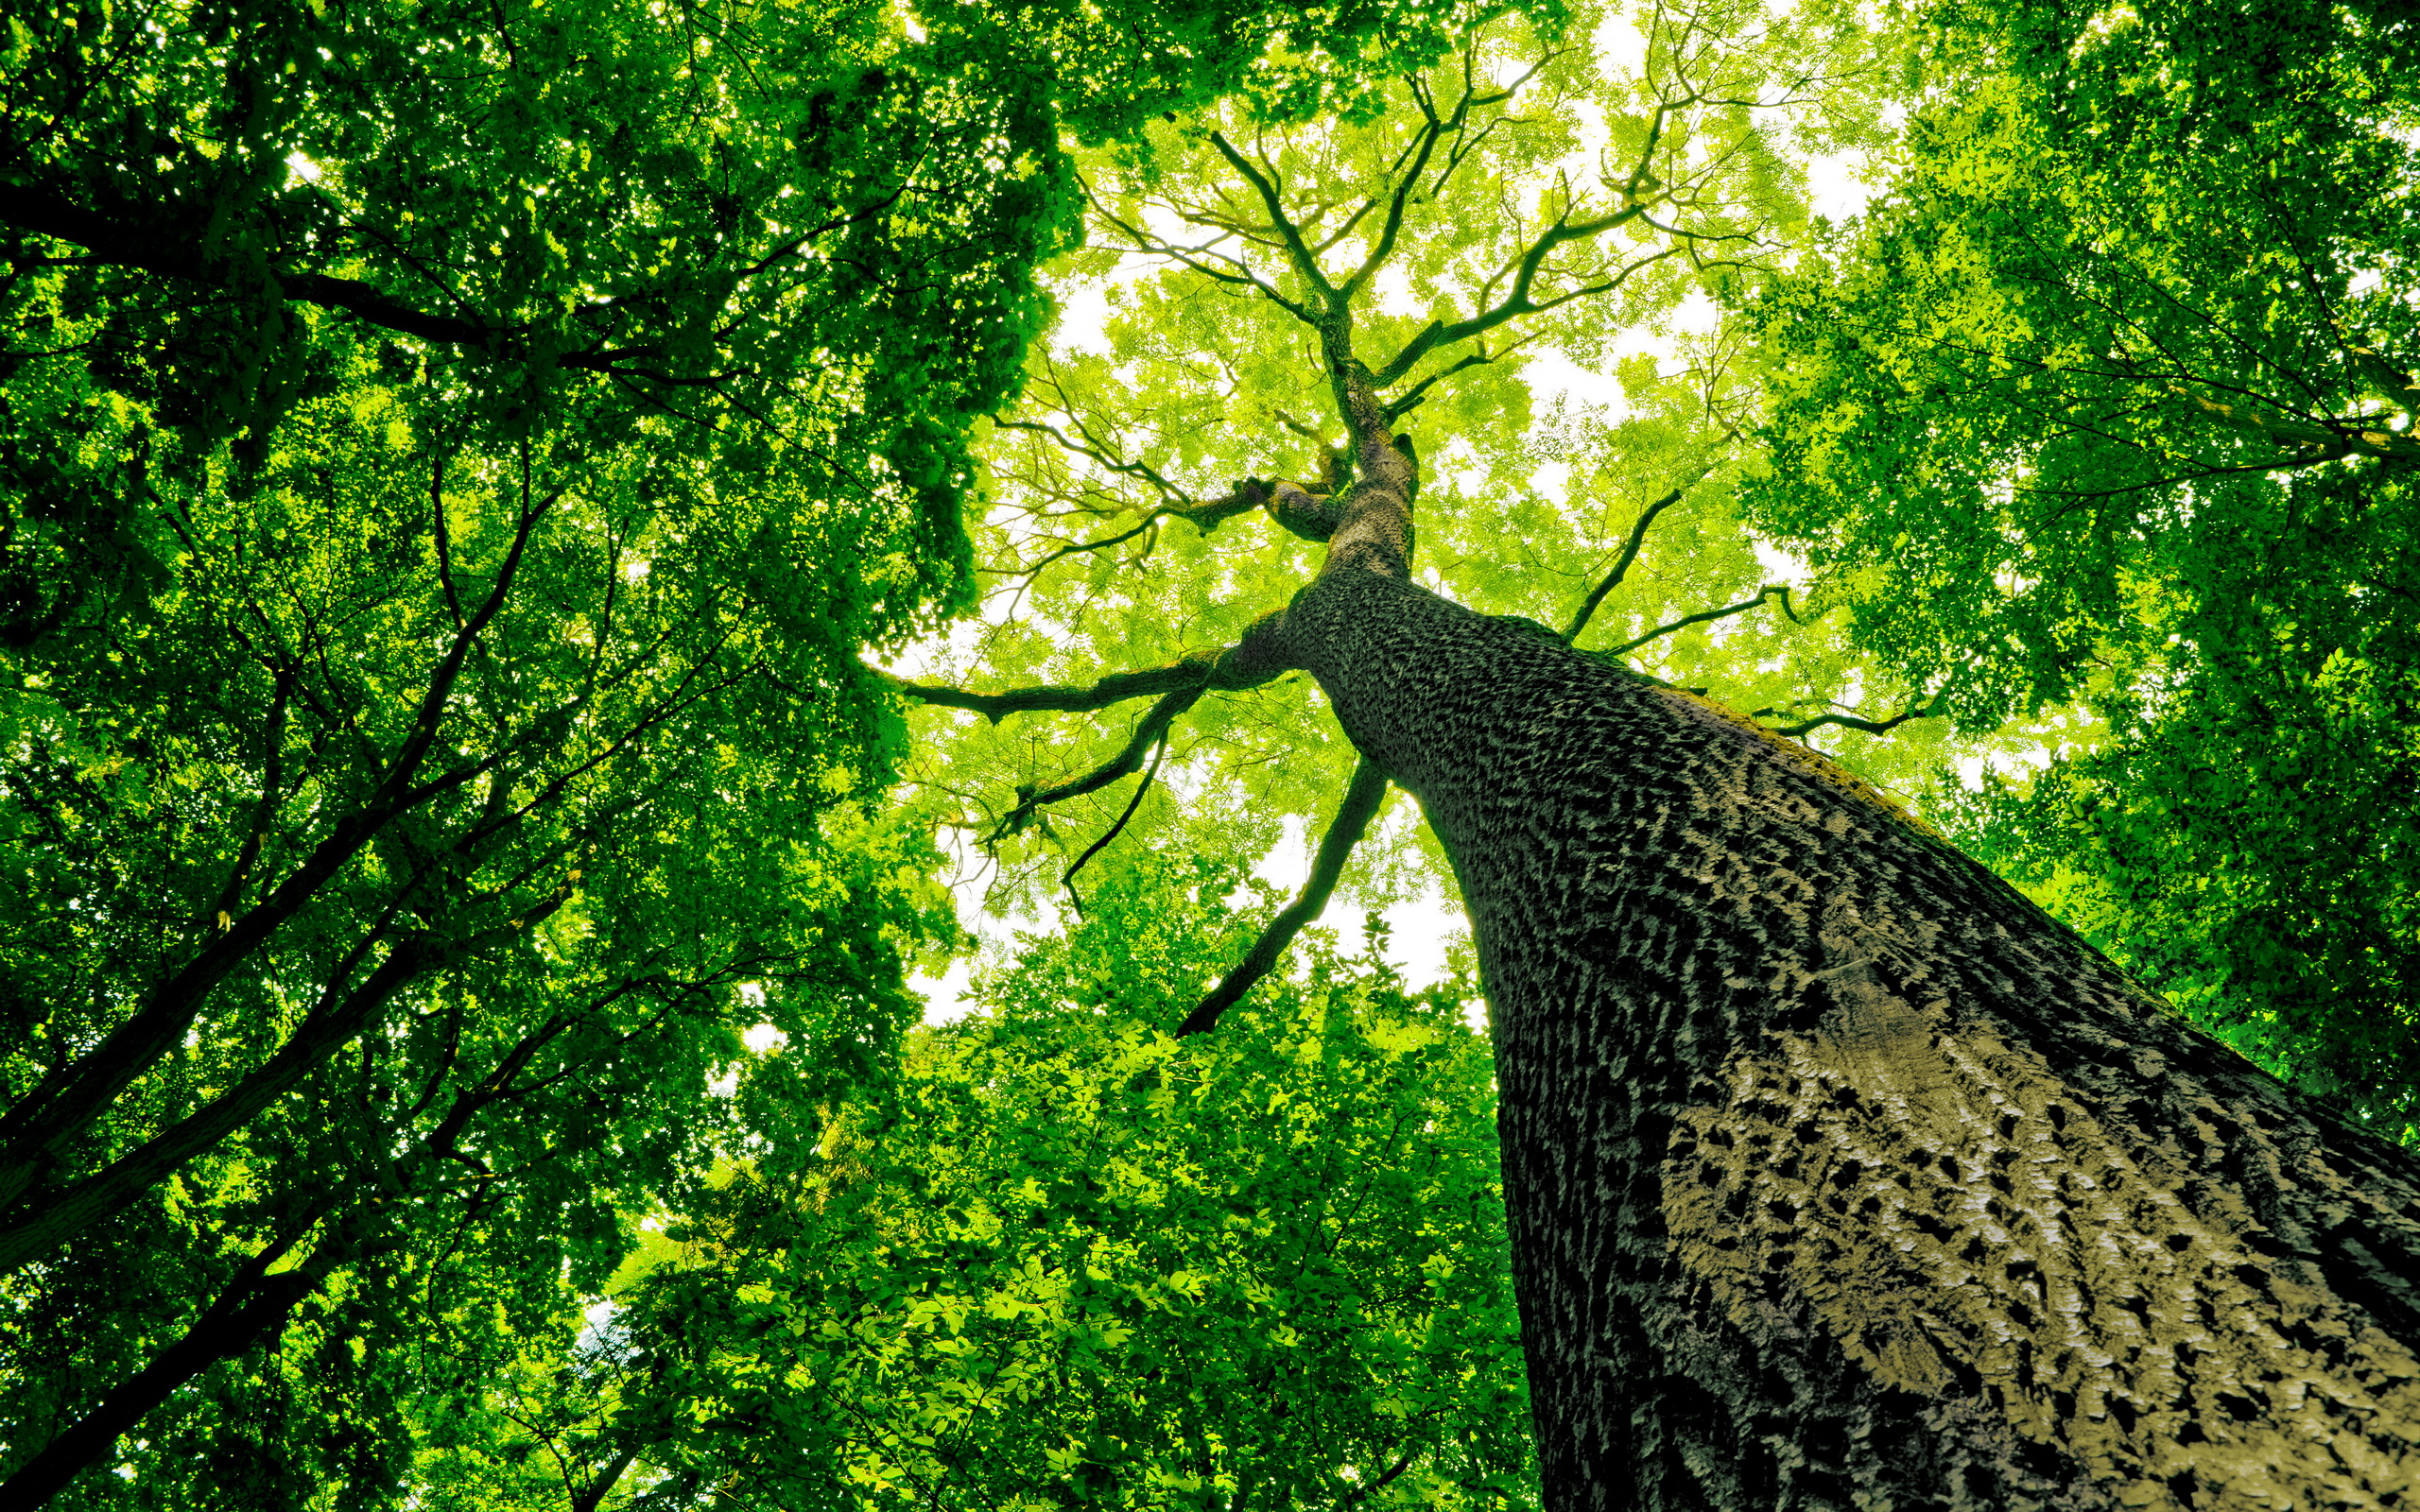 Скачать обои бесплатно Деревья, Дерево, Земля/природа картинка на рабочий стол ПК